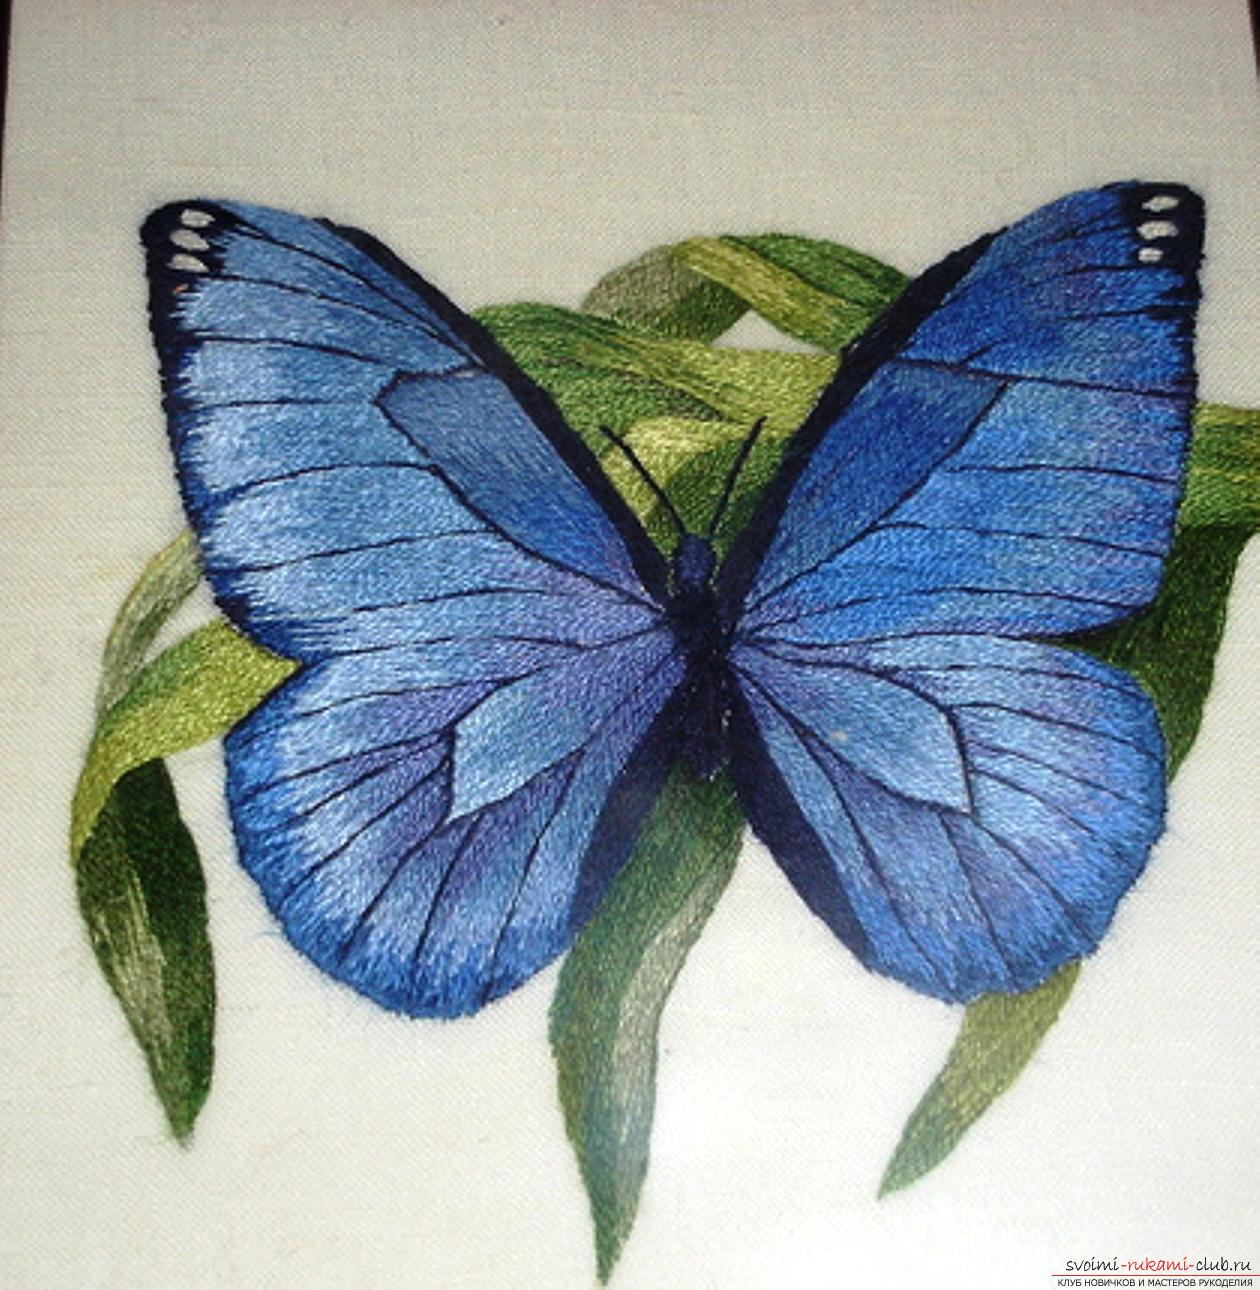 Schema și descrierea modelului fluturelor de tricotat, video mk: 14 opțiuni